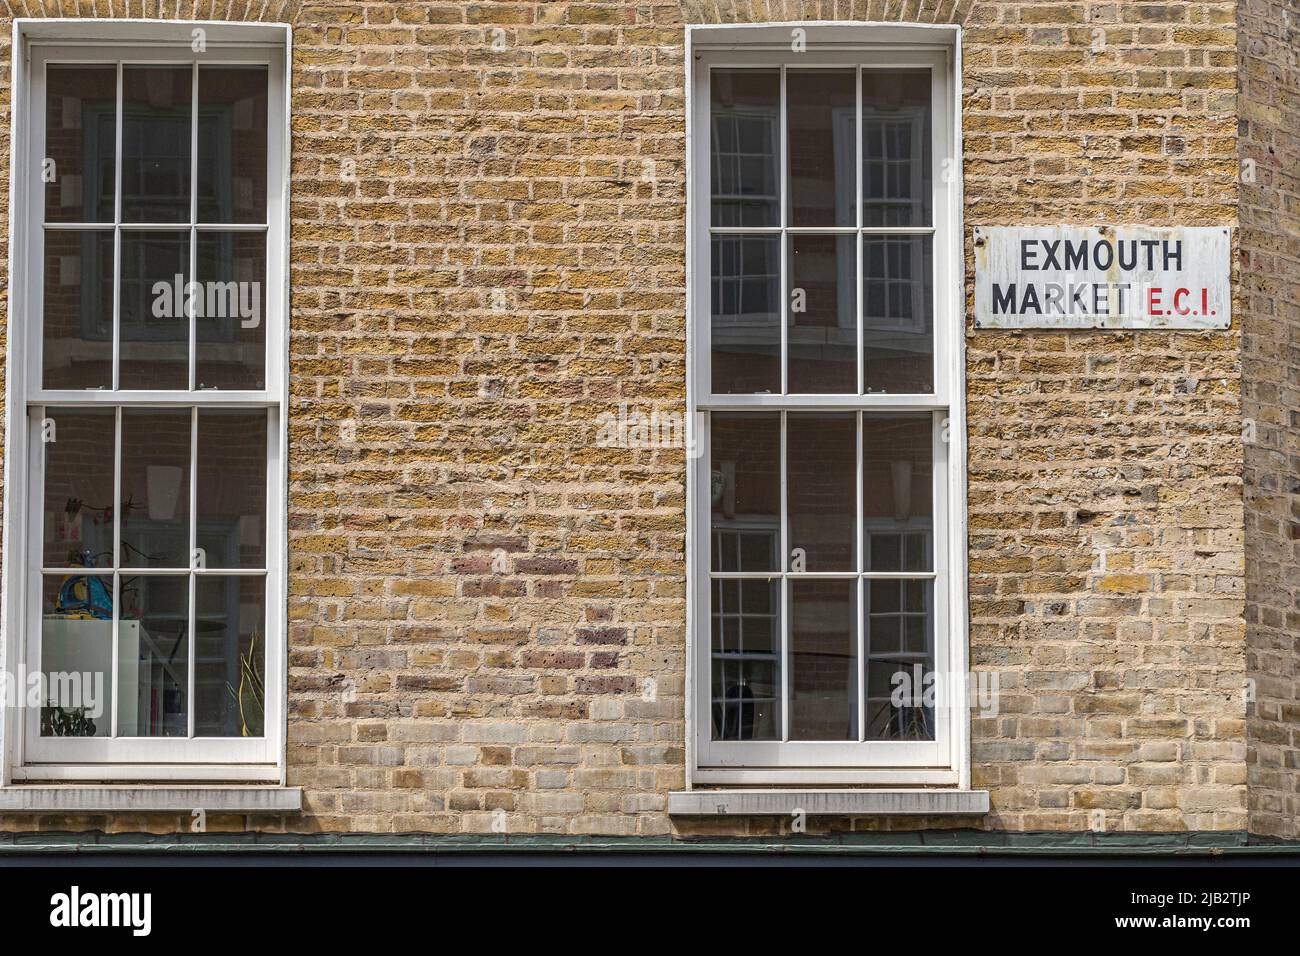 Enseigne de rue Exmouth Market sur une maison en brique avec de grandes fenêtres à guillotine, marché Exmouth, Clerkenwell, Londres EC1 Banque D'Images